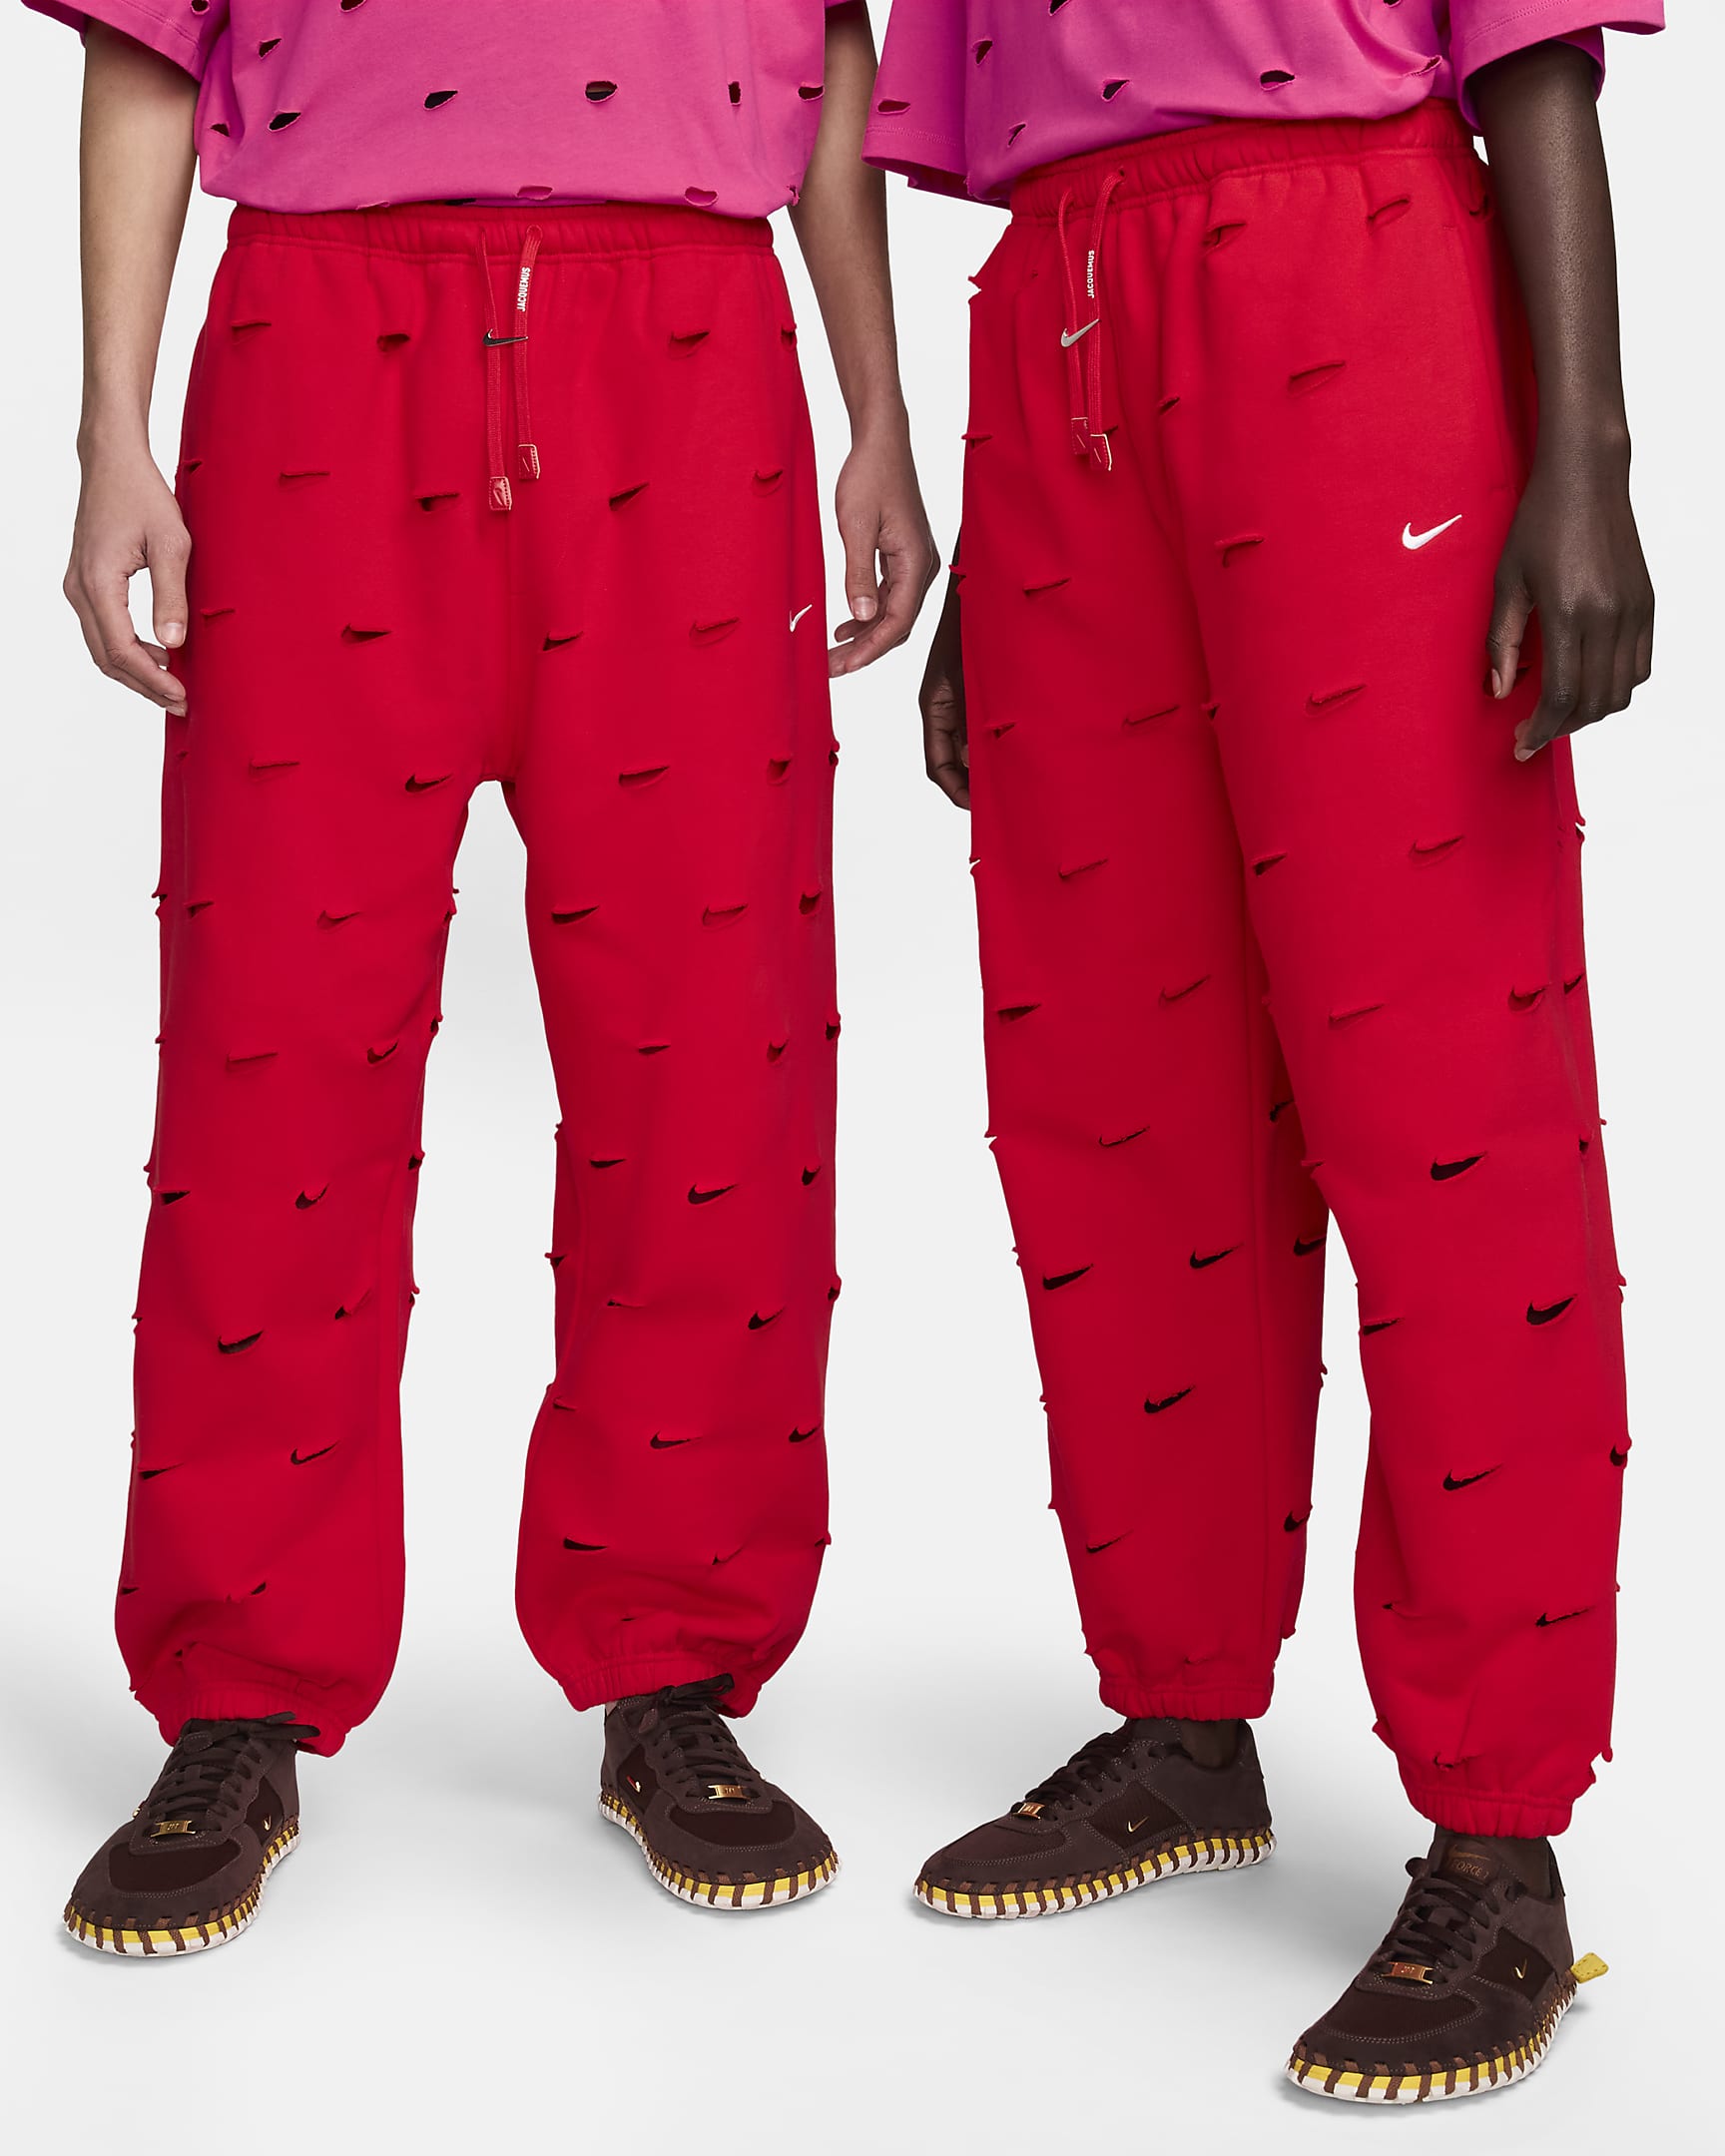 Pantalon Swoosh Nike x Jacquemus - University Red